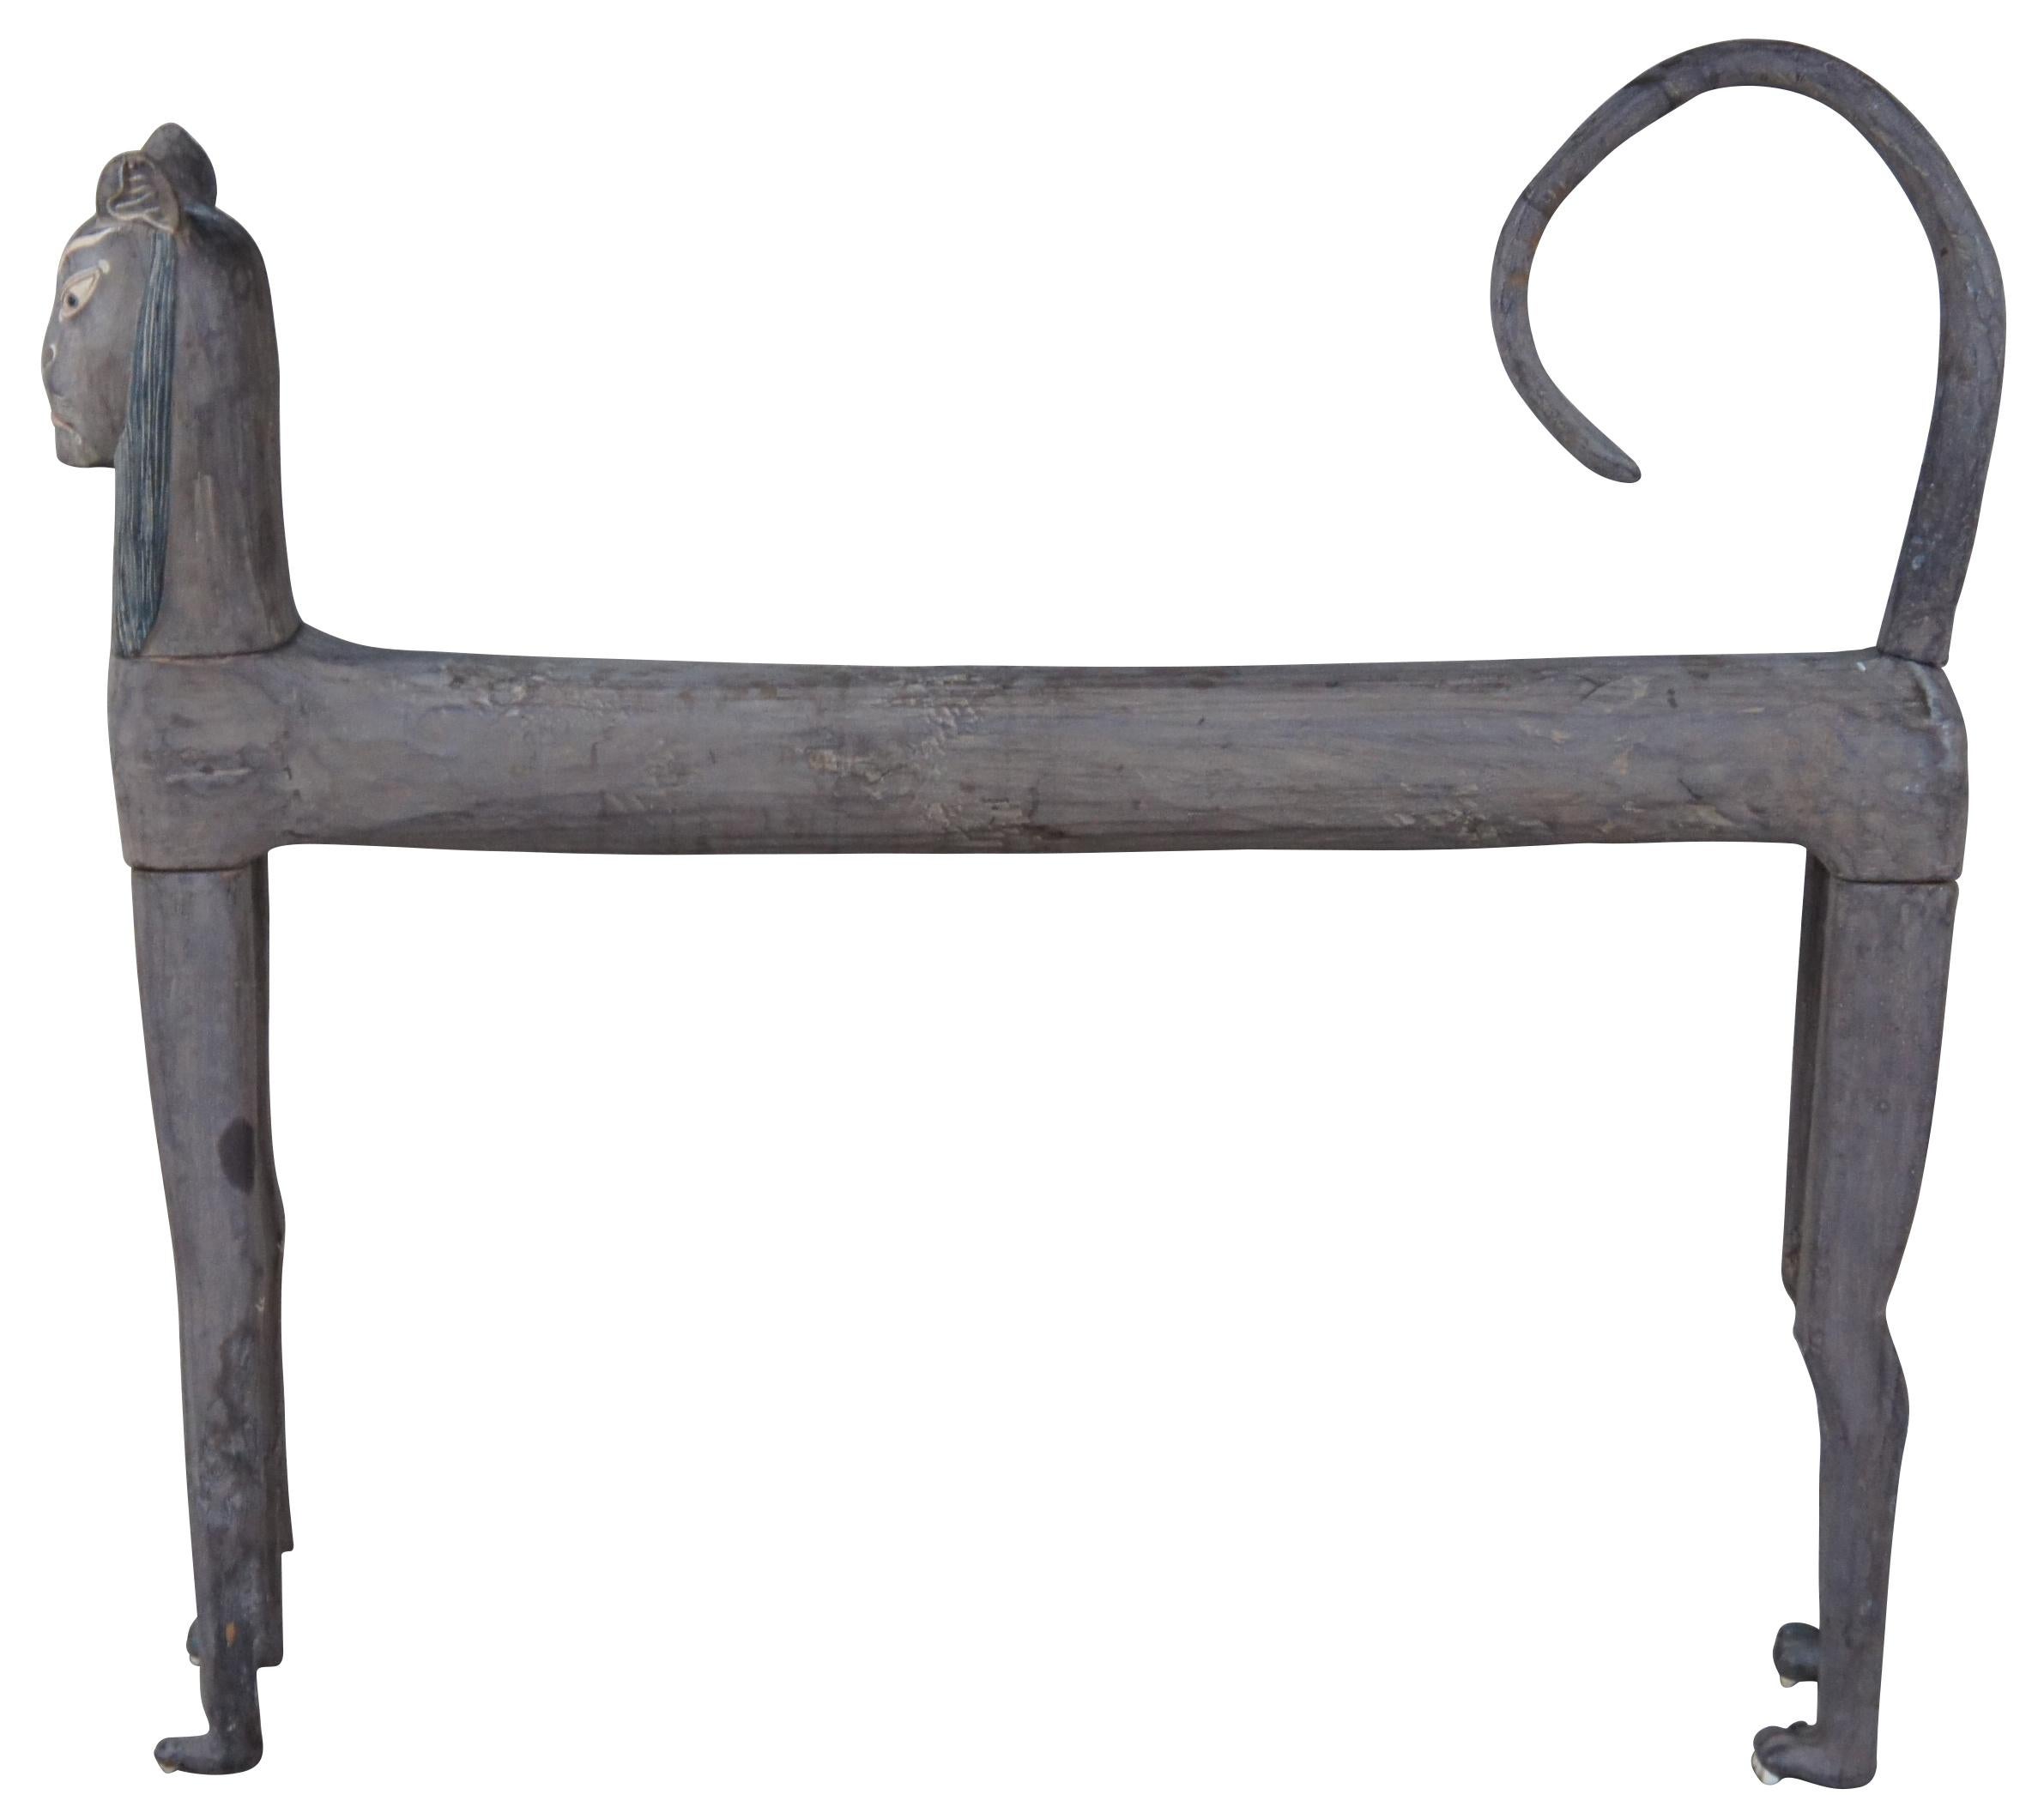 sculpture en bois d'art populaire du 20e siècle en forme de chat ou statue. Il présente une conception de type knockdown avec une forme élégante. Comprend des griffes pointues, une queue recourbée et un visage pharaonique peint à la main.  Mesure :